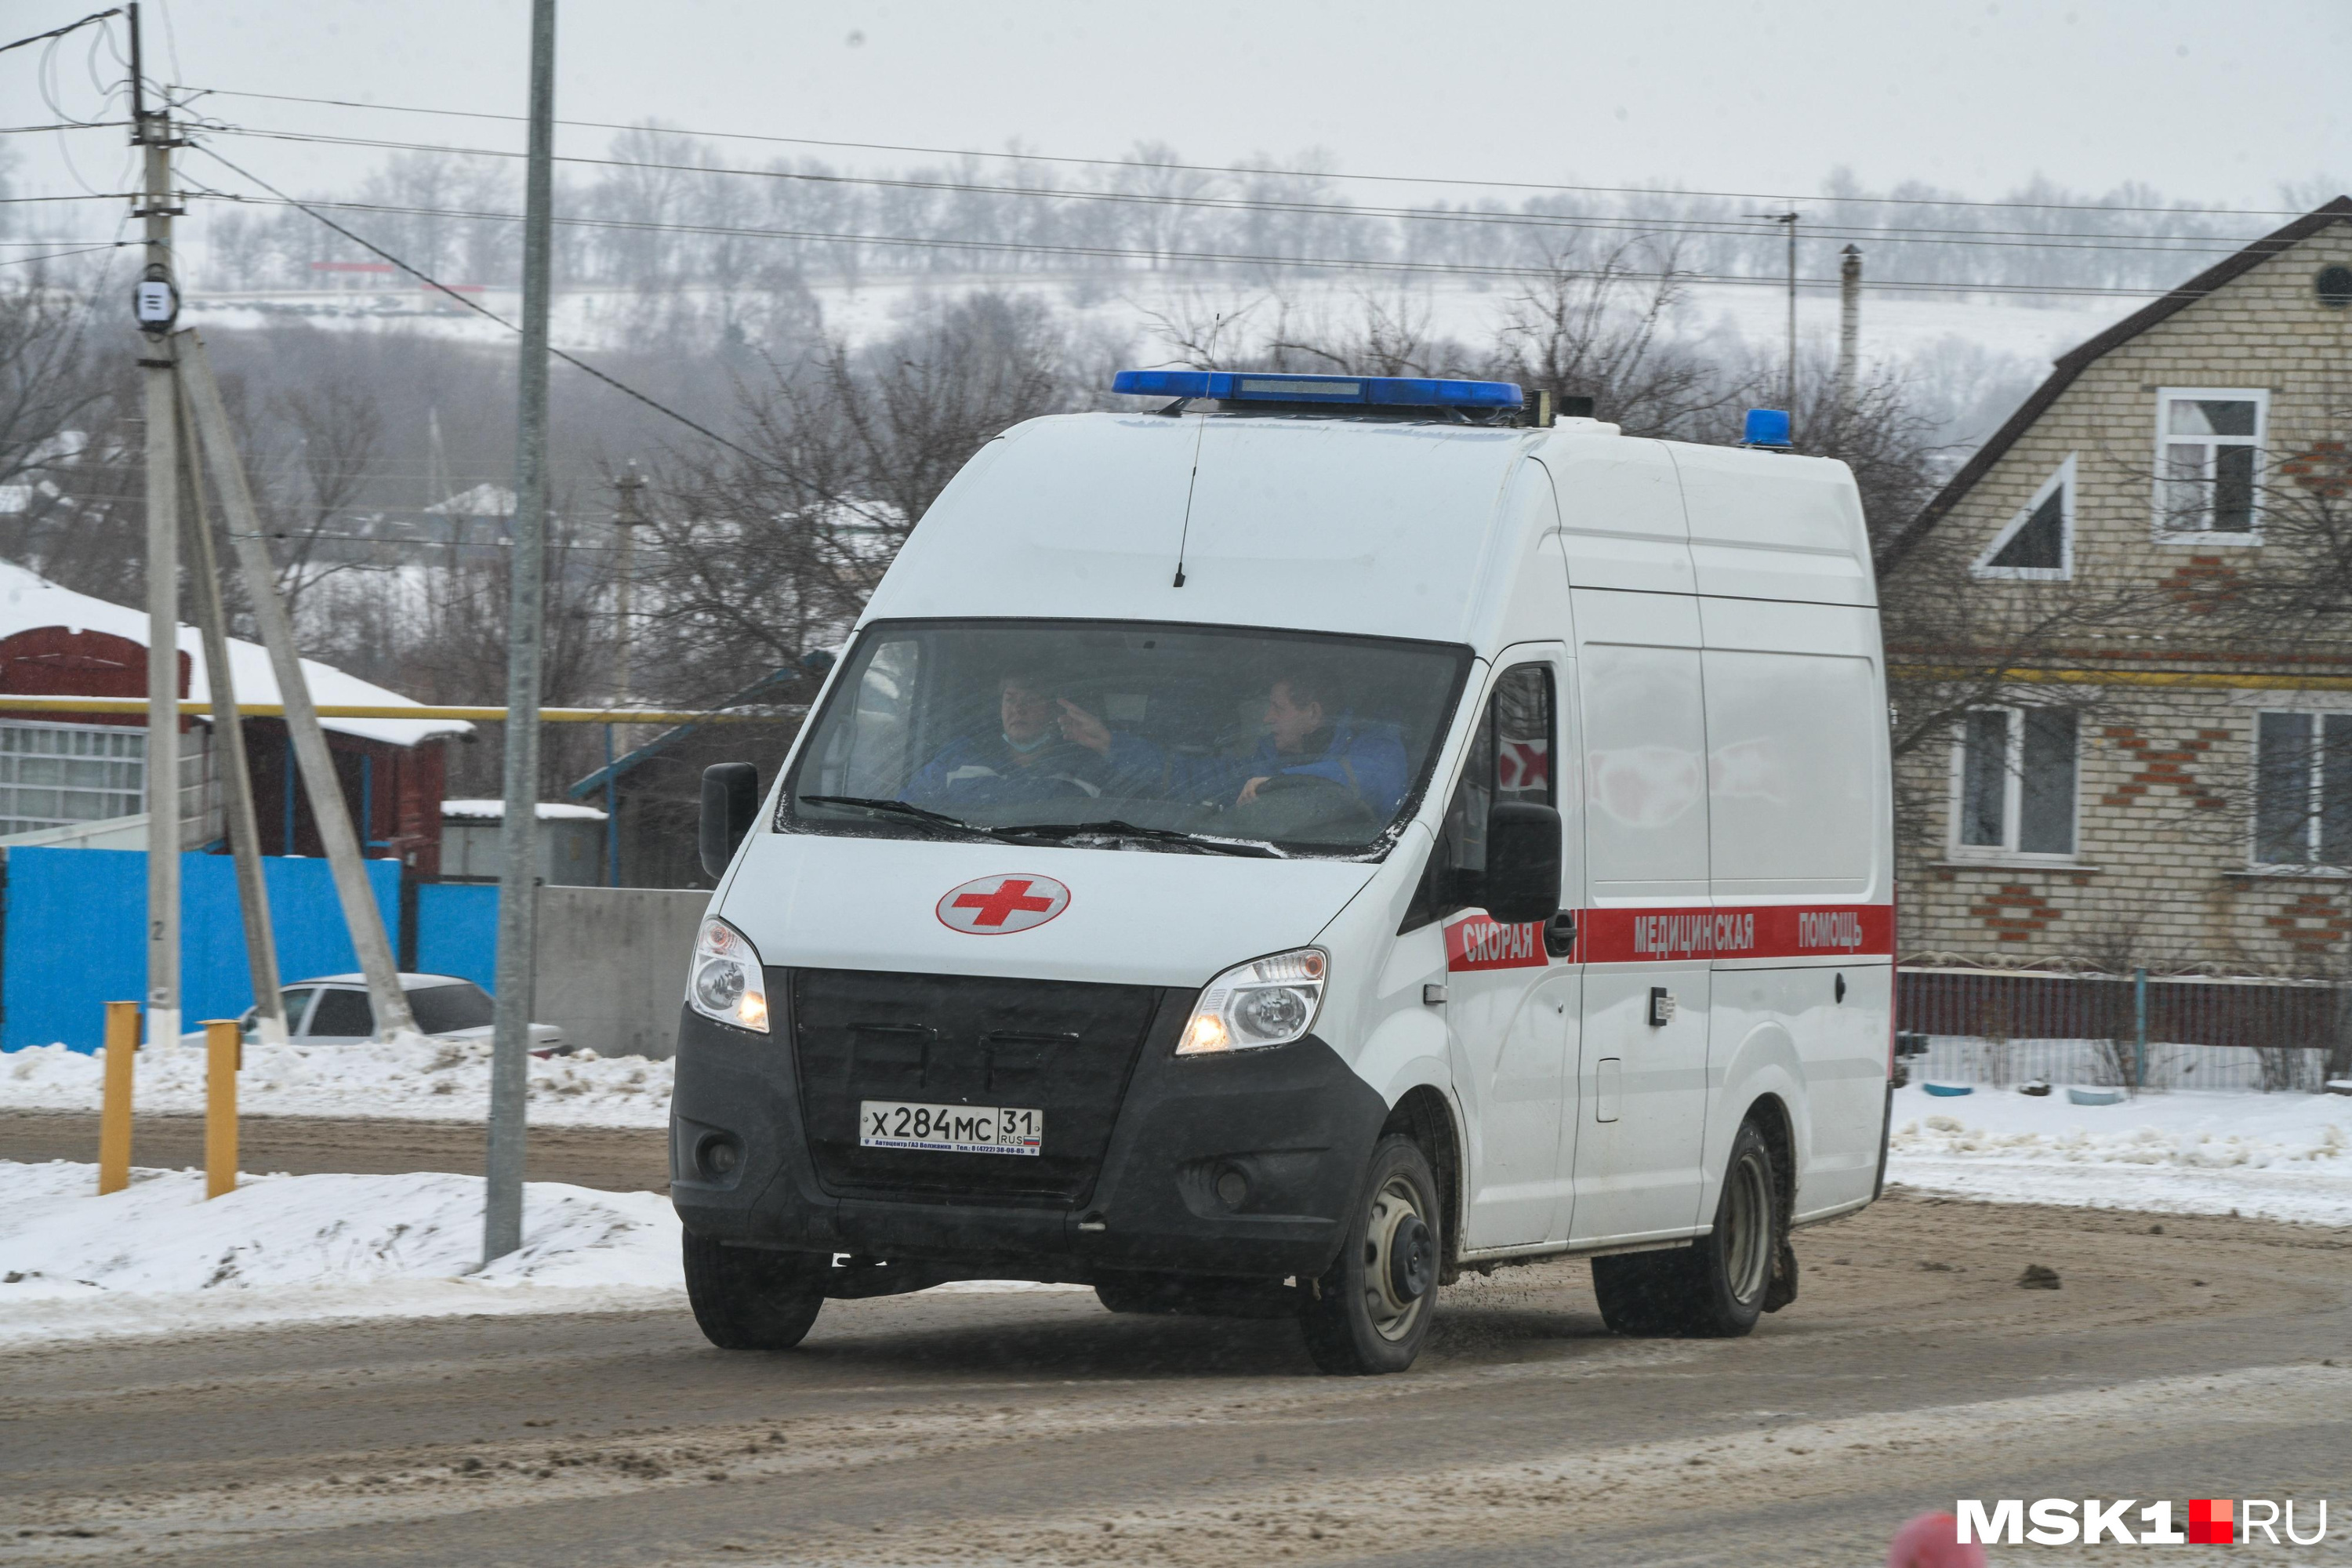 Четыре человека, в том числе подростки, пострадали в ДТП в Улетах в Забайкалье